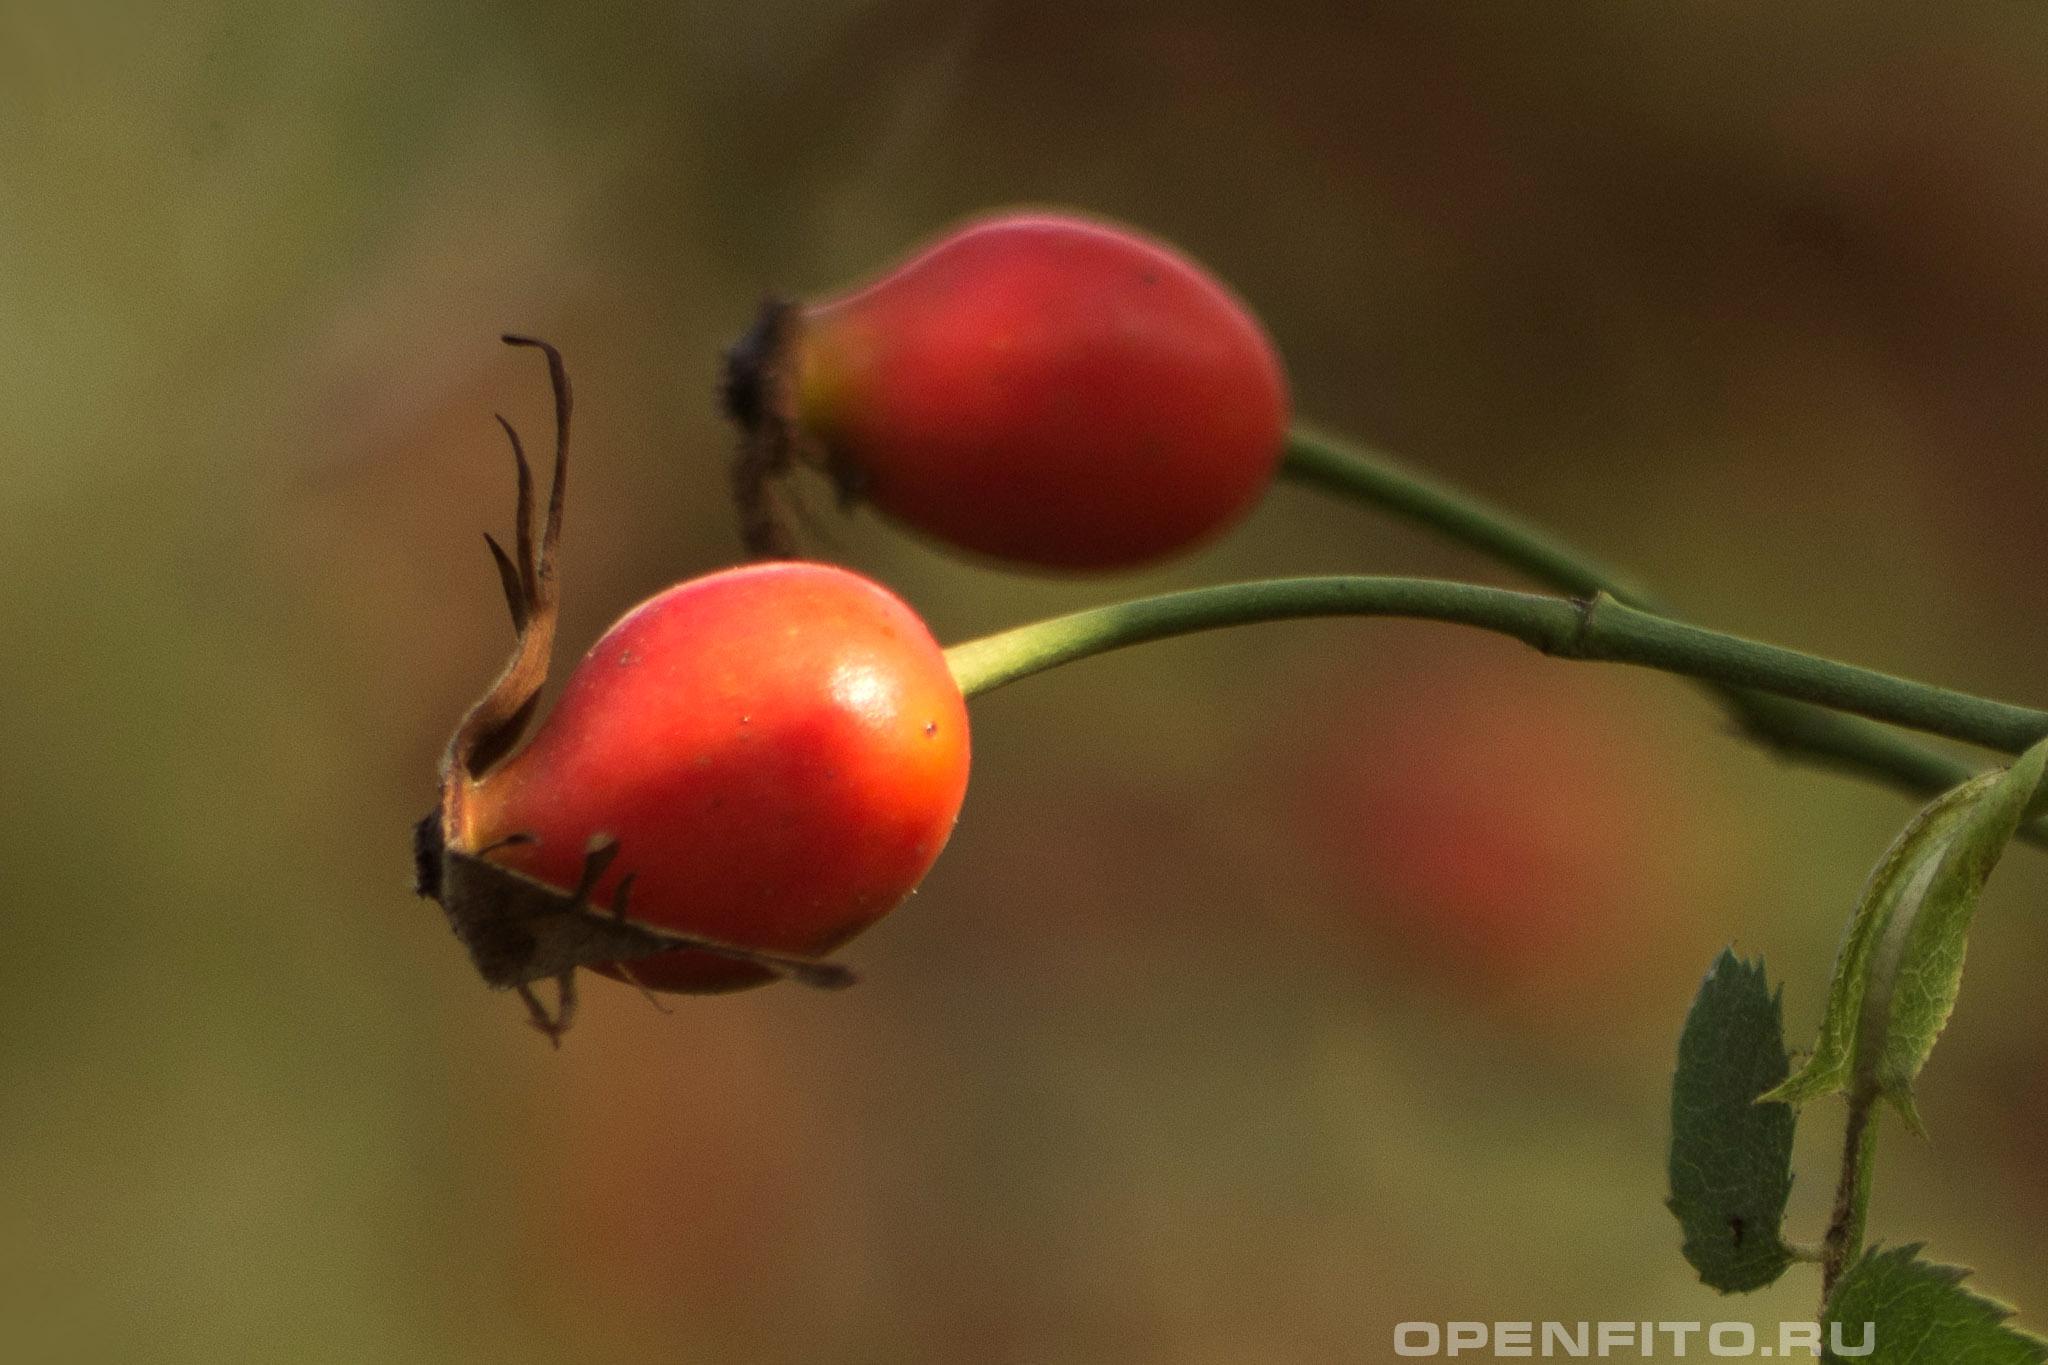 Шиповник почти-собачий - фотография плодов